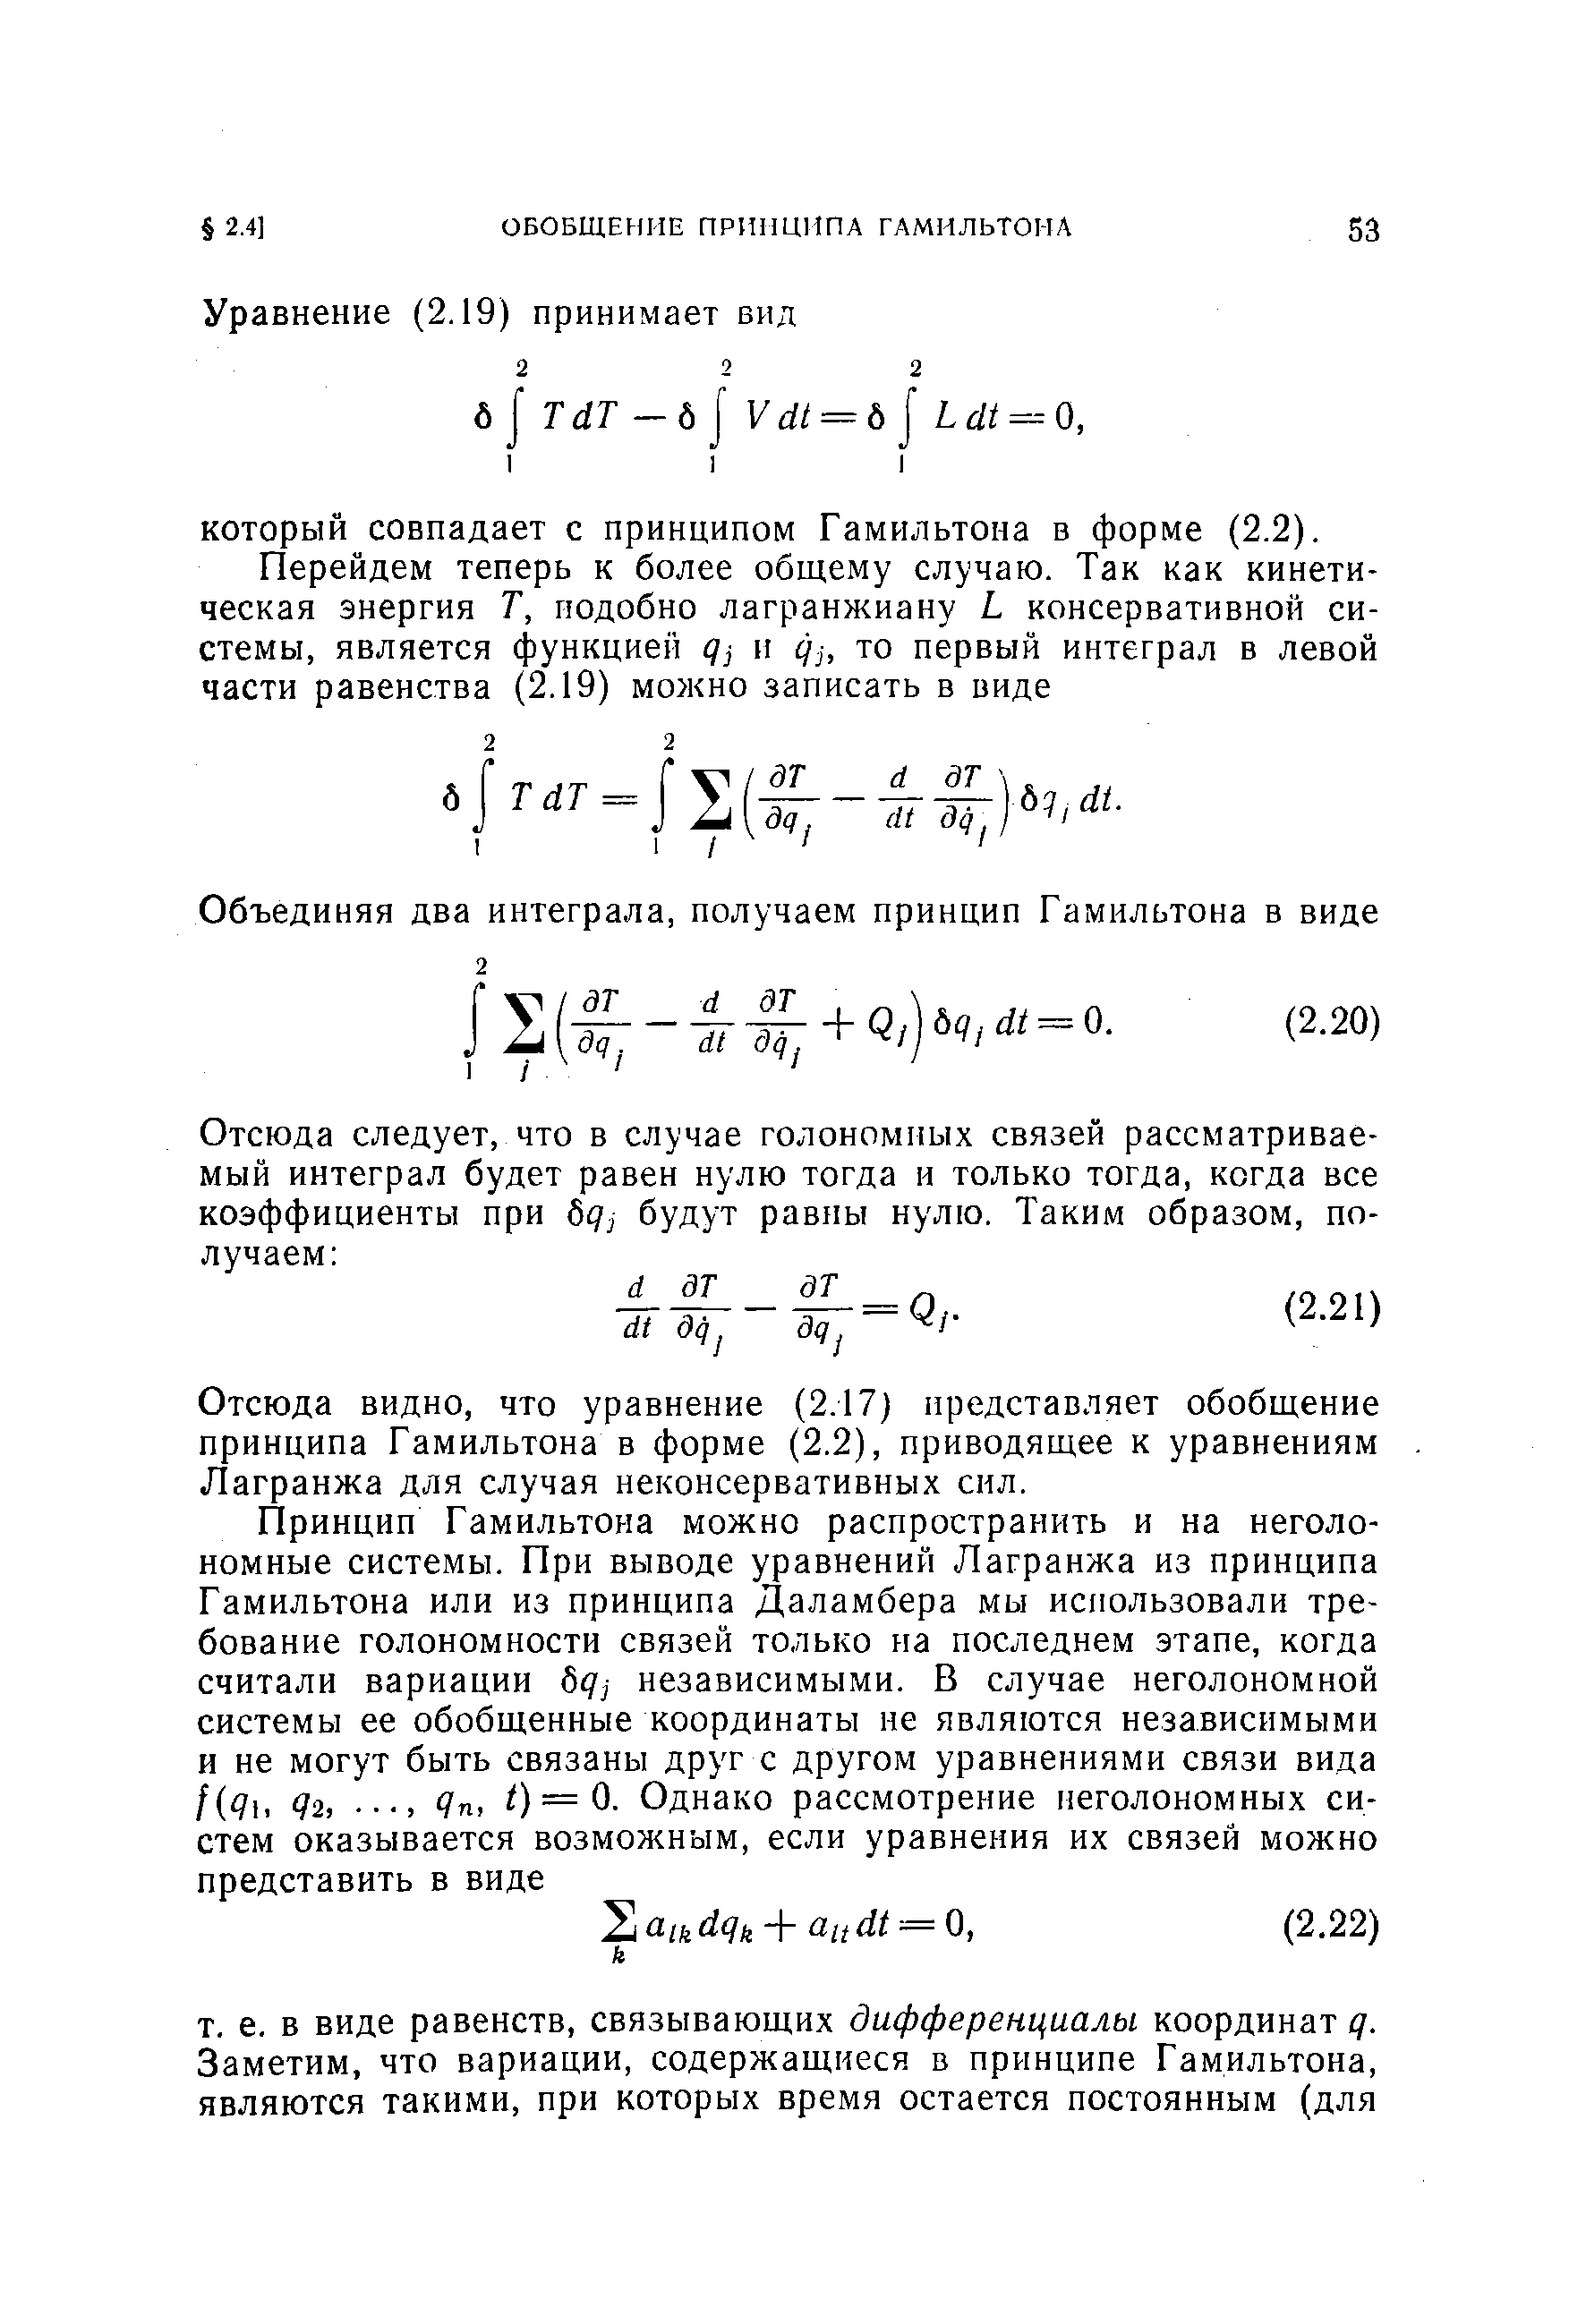 Отсюда видно, что уравнение (2.17) представляет обобщение принципа Гамильтона в форме (2.2), приводящее к уравнениям Лагранжа для случая неконсервативных сил.
